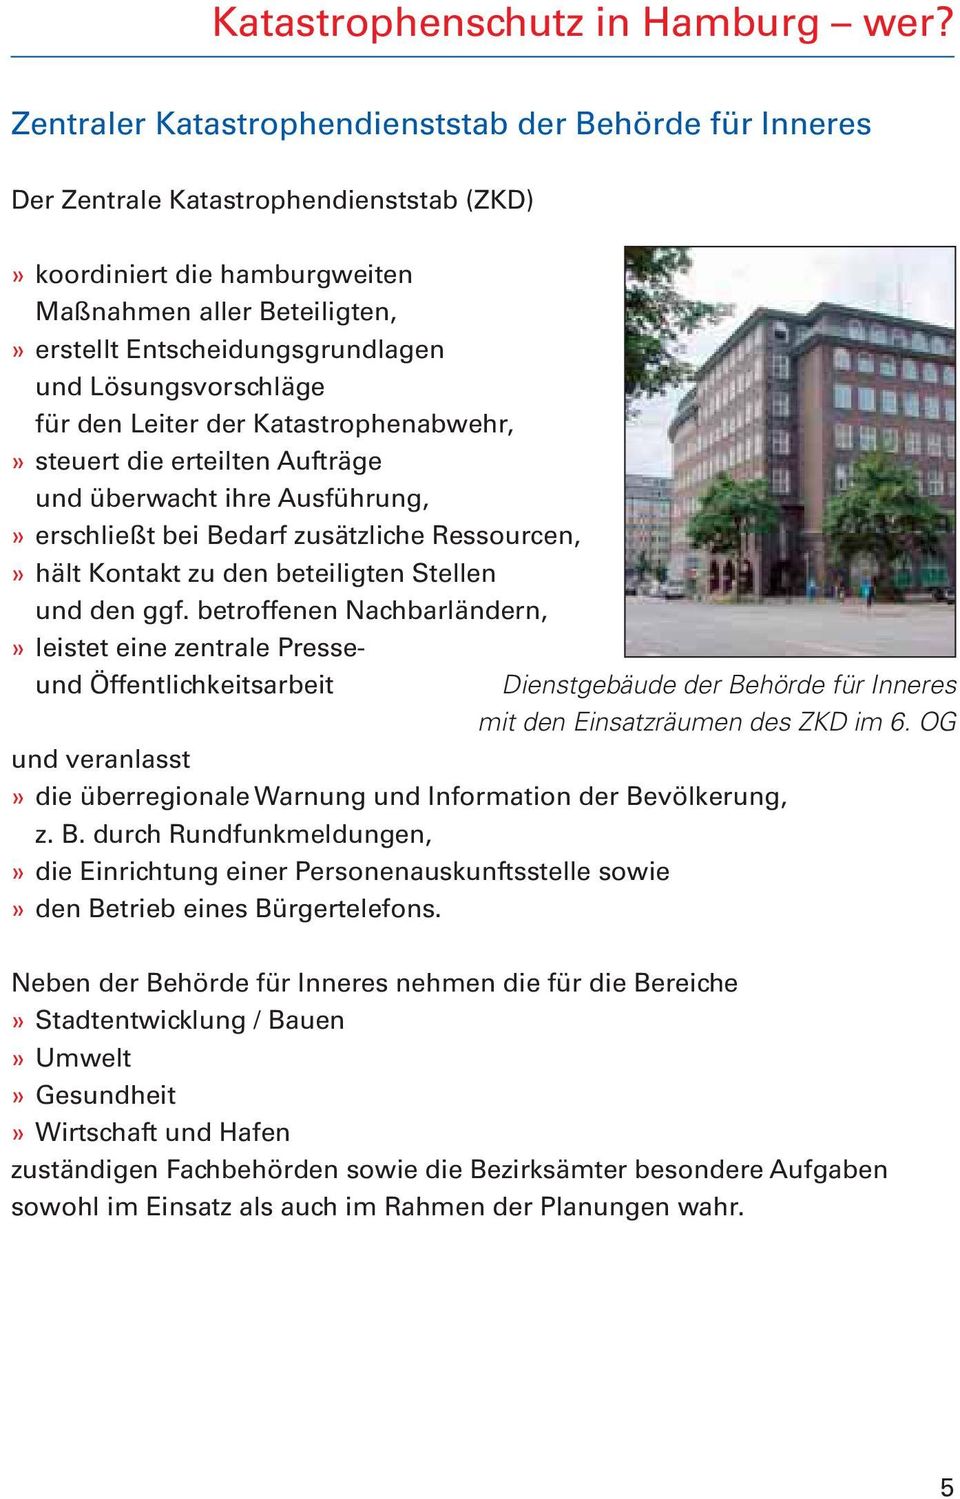 Freie Und Hansestadt Hamburg Behorde Fur Inneres Katastrophenschutz In Hamburg Fur Hamburg Pdf Free Download